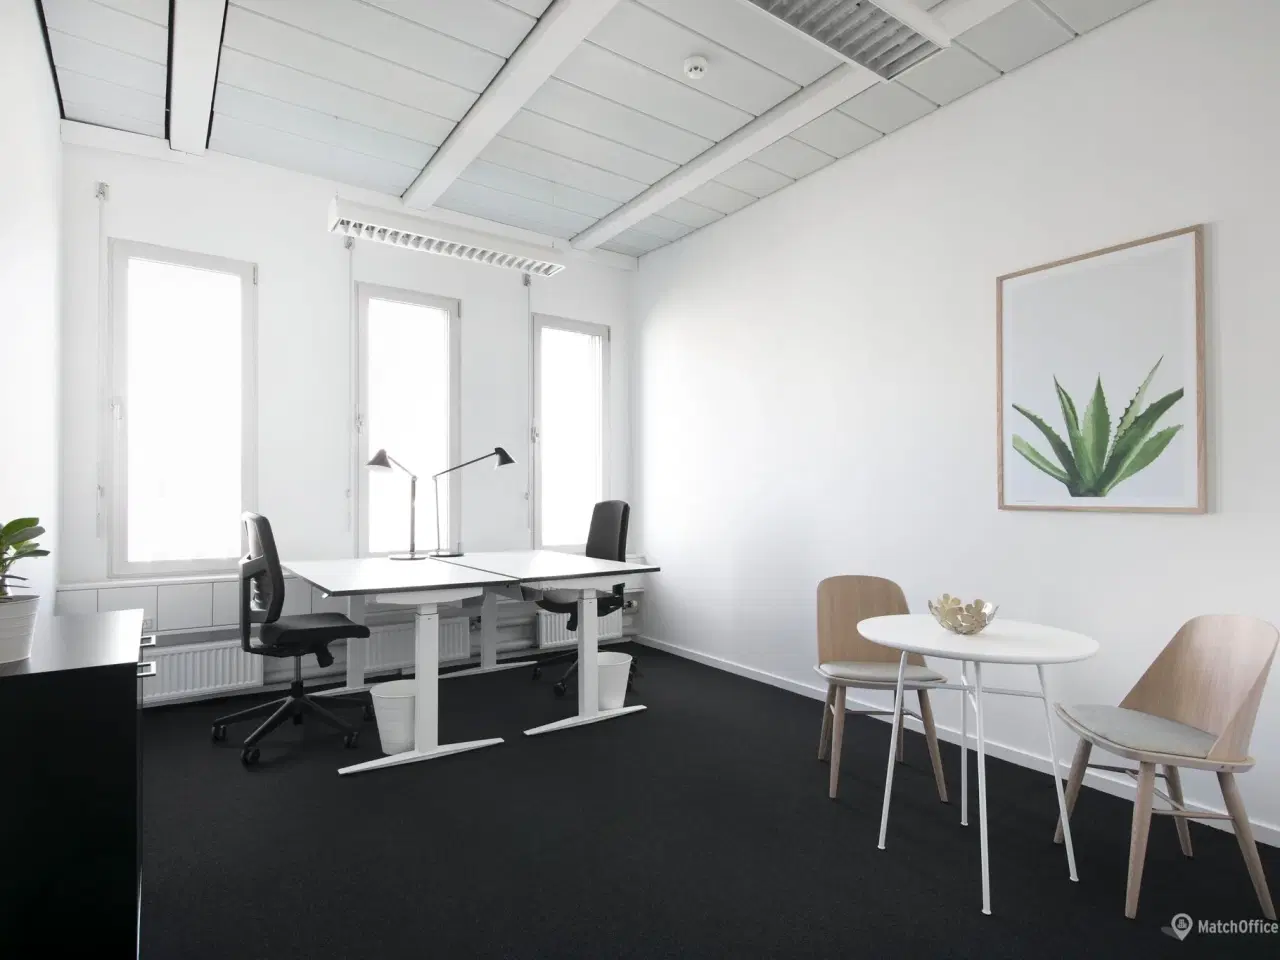 Billede 10 - Billigt kontor i Danmarks svar på Silicon Valley?